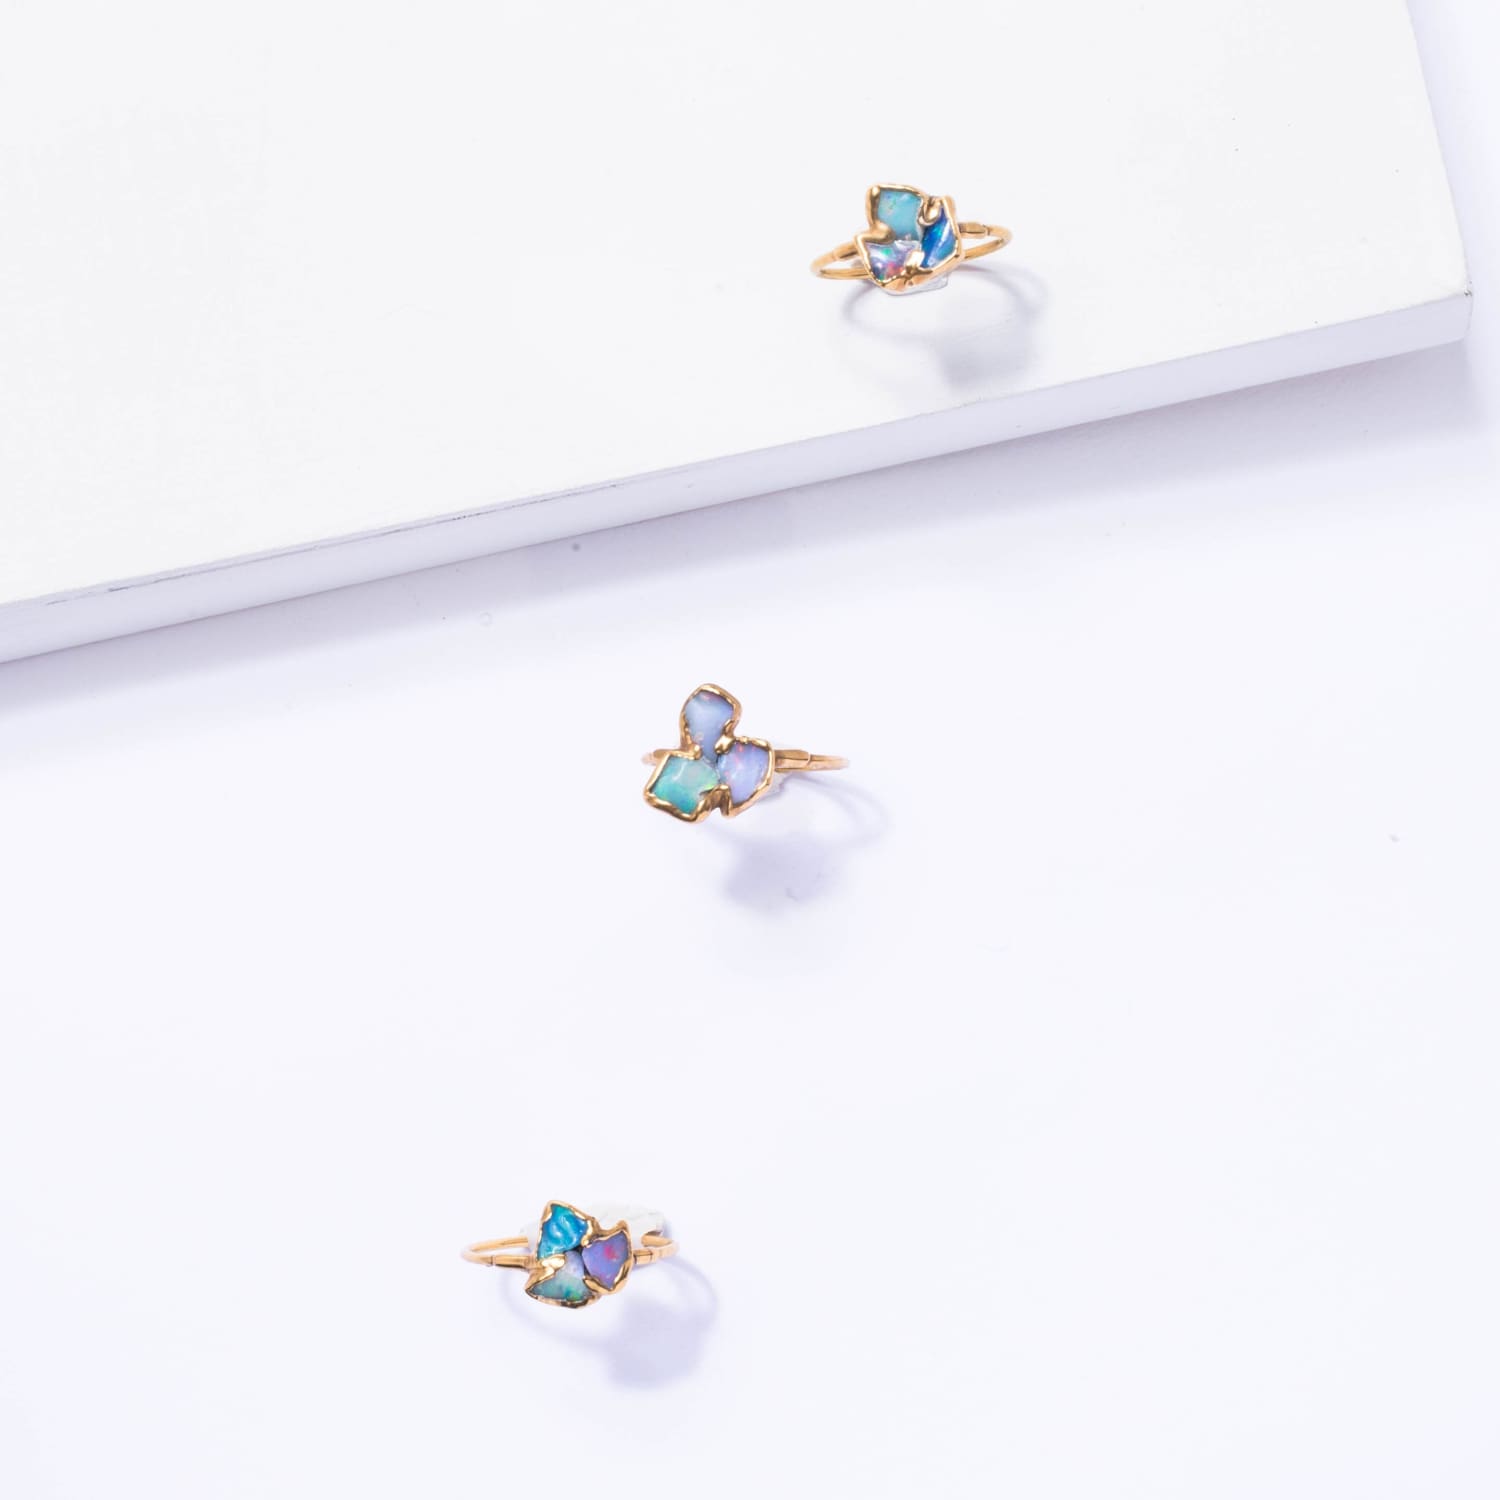 Fleur Three Stone Raw Australian Opal Cluster Ring Gemstone